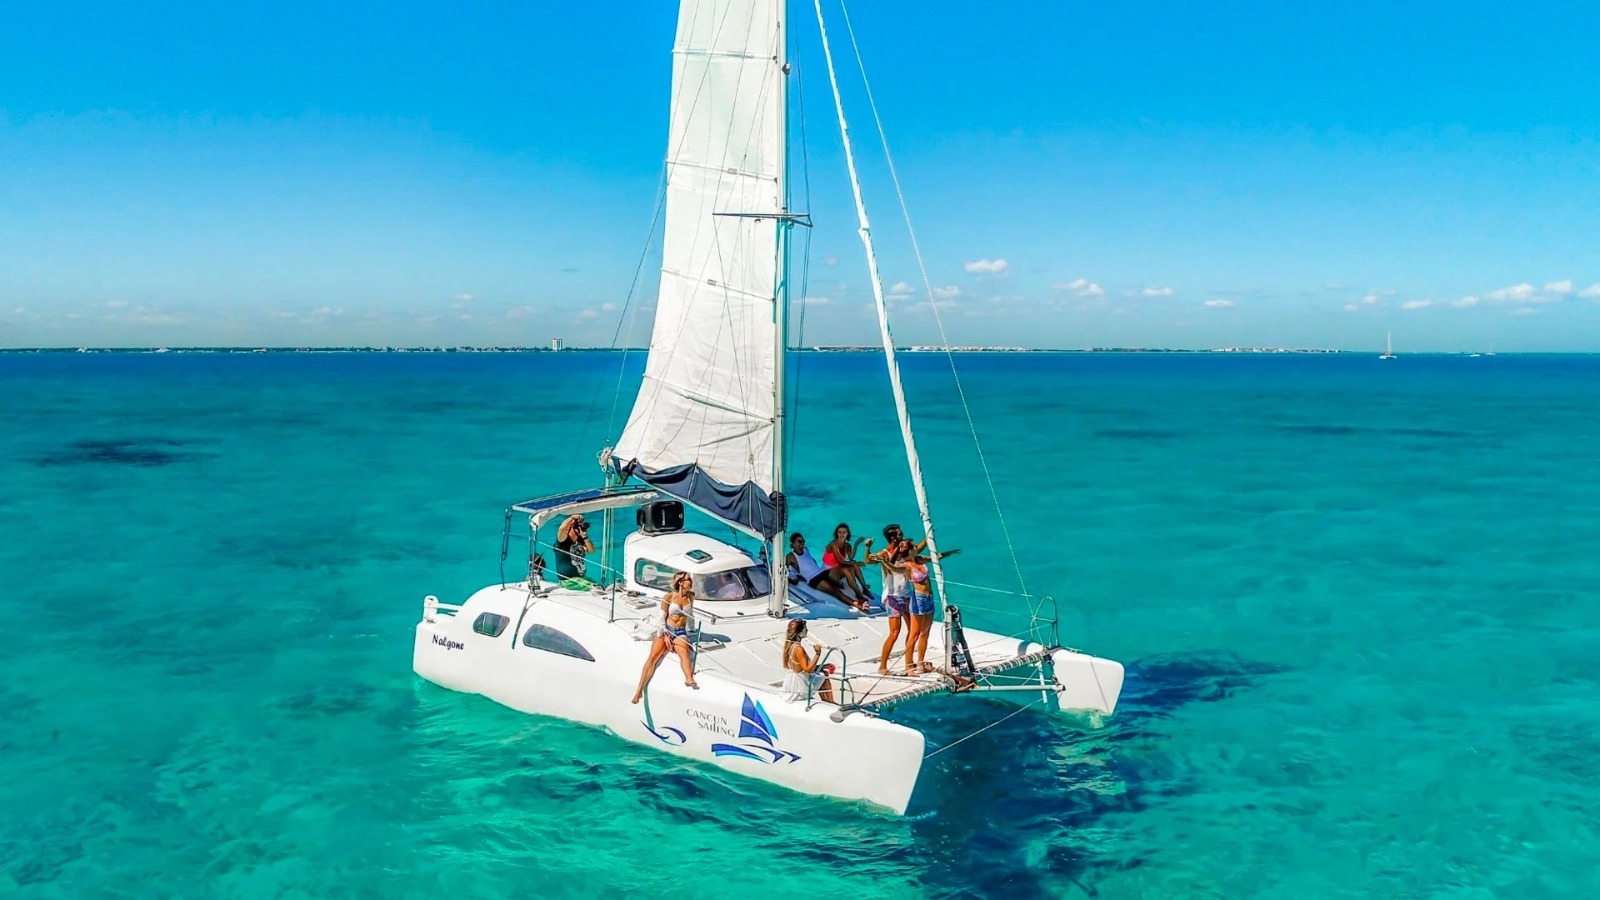 Disfruta Cancún en estas vacaciones de verano. Algunas actividades con todo incluido en Isla mujeres. Empieza a armar tus actividades para